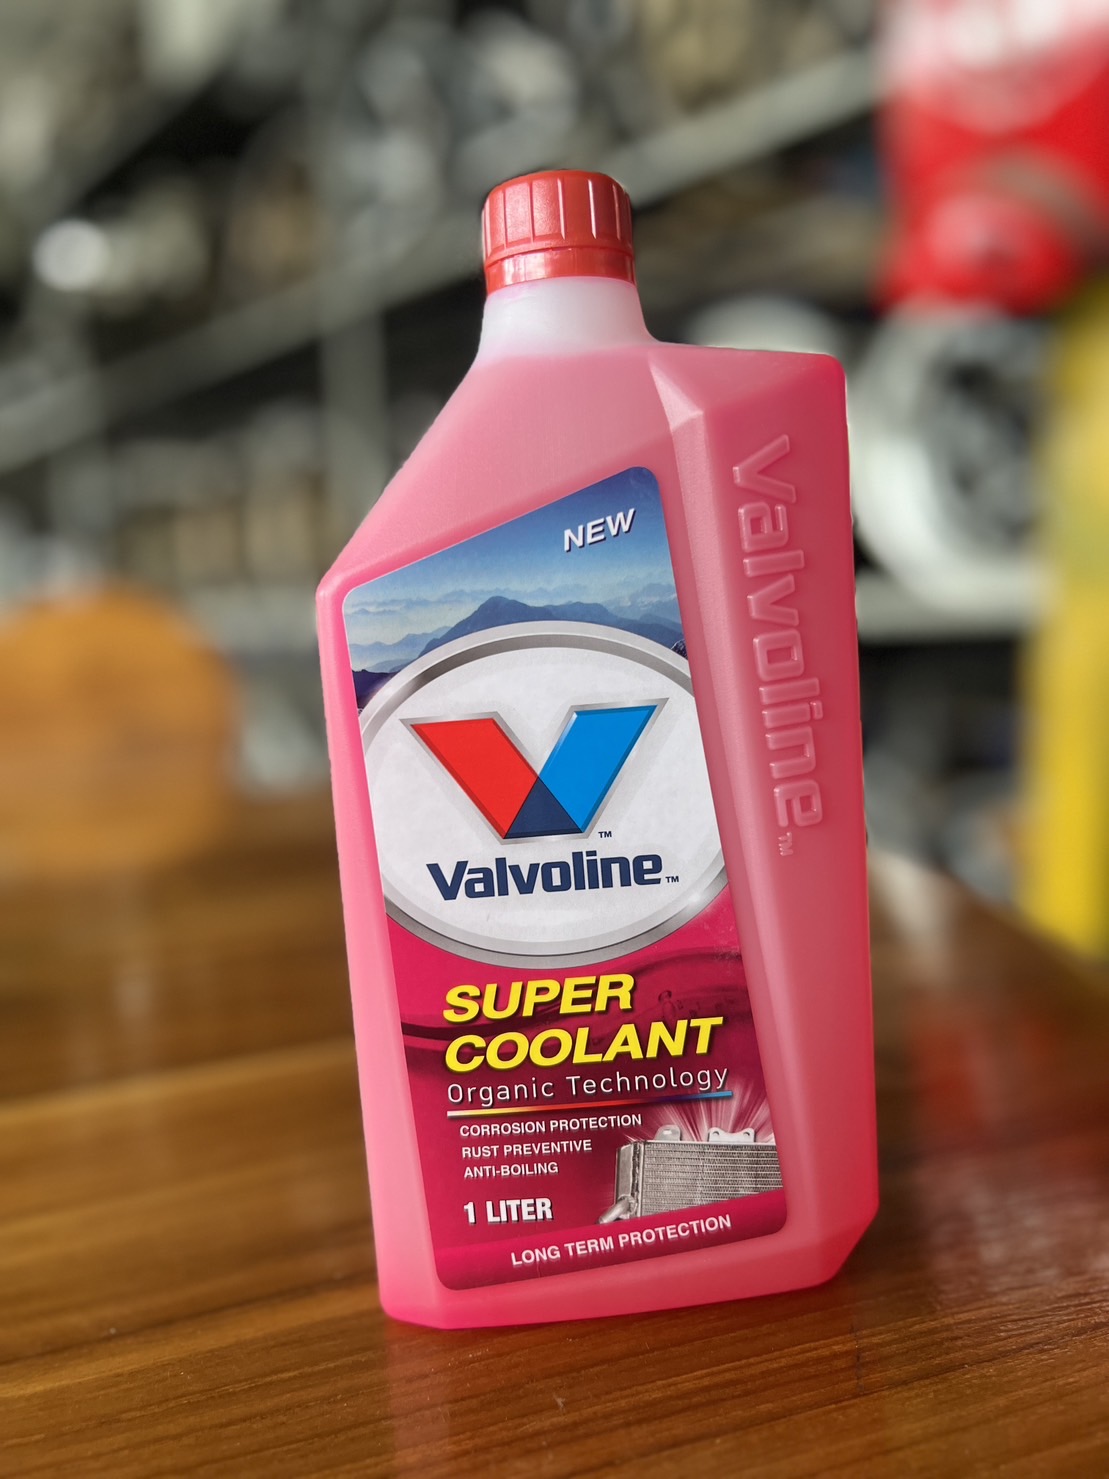 นำยาหลอเยน นำยาหมอนำ Valvoline Super Coolant ขนาด 1 ลตร สชมพ